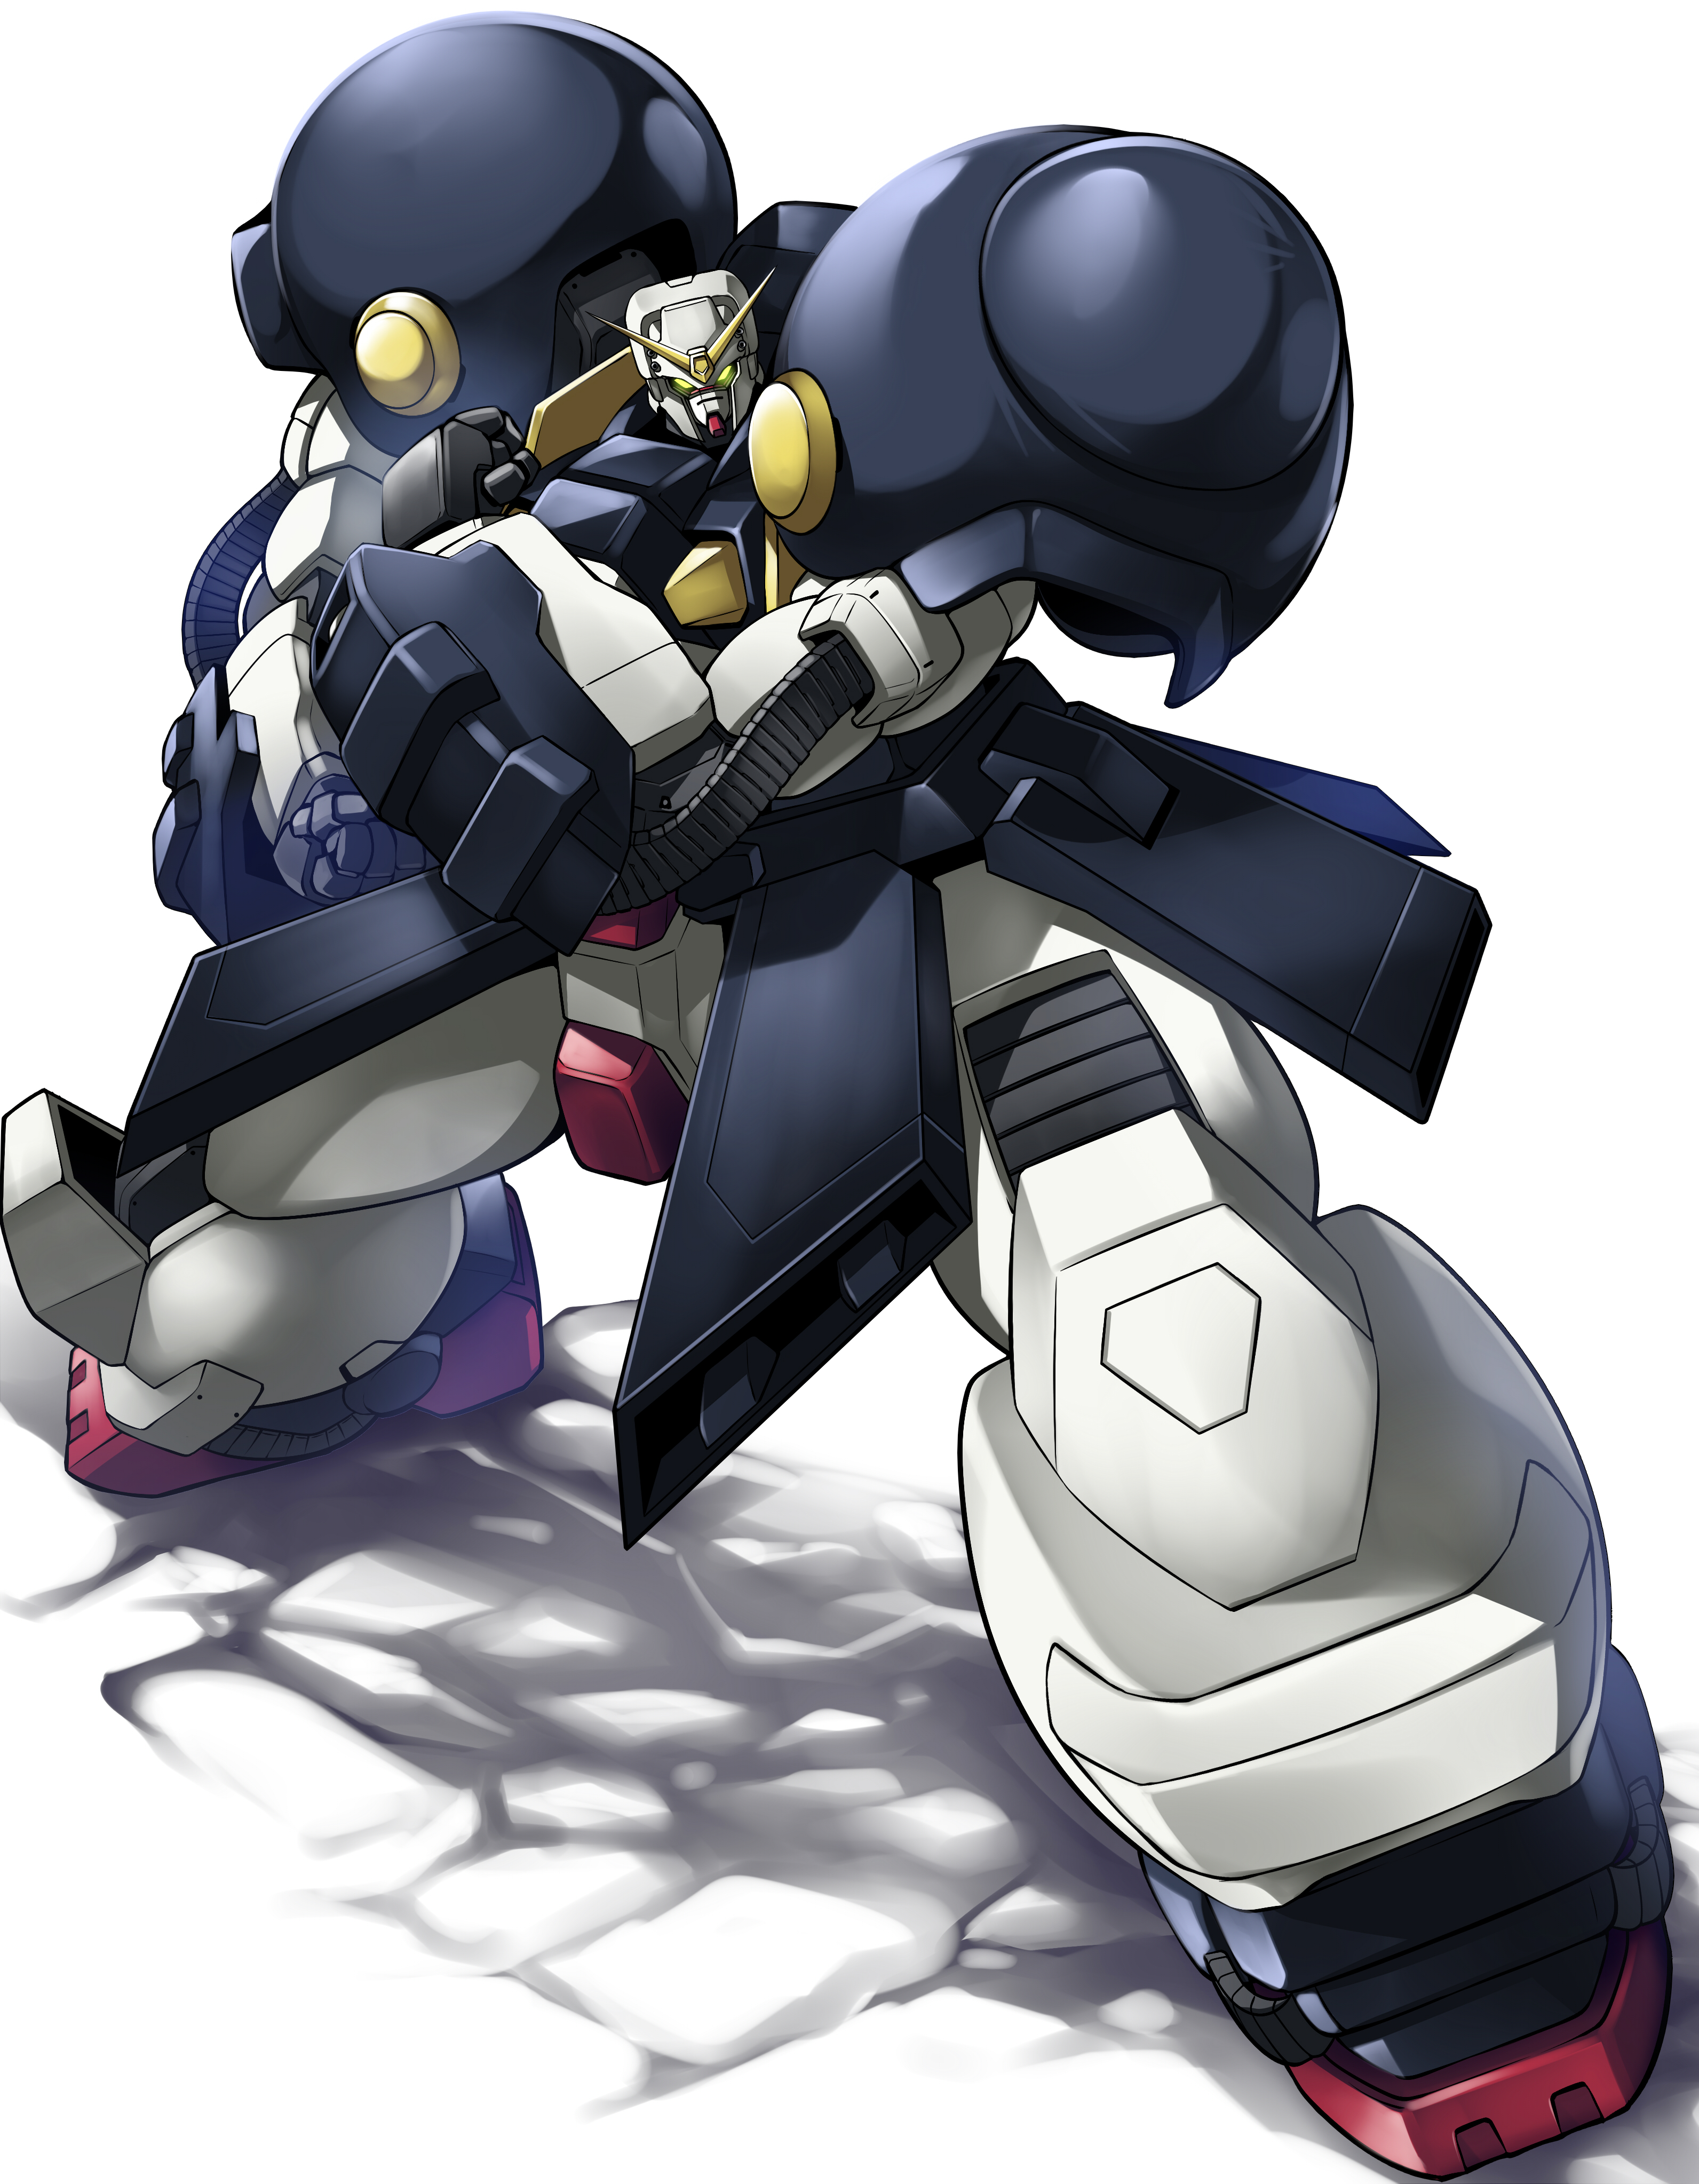 Anime 3184x4092 Bolt Gundam anime mechs Gundam Super Robot Taisen Mobile Fighter G Gundam artwork digital art fan art